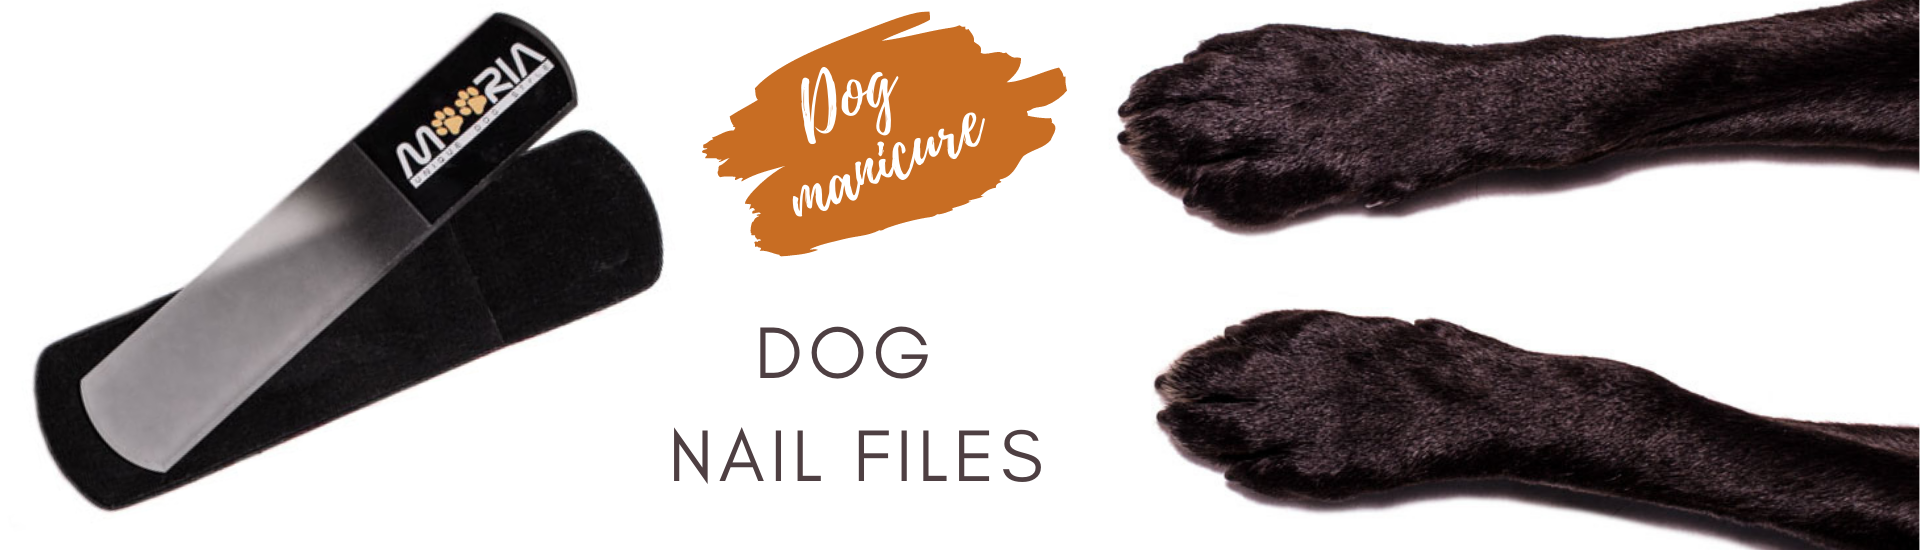 Dog nail files